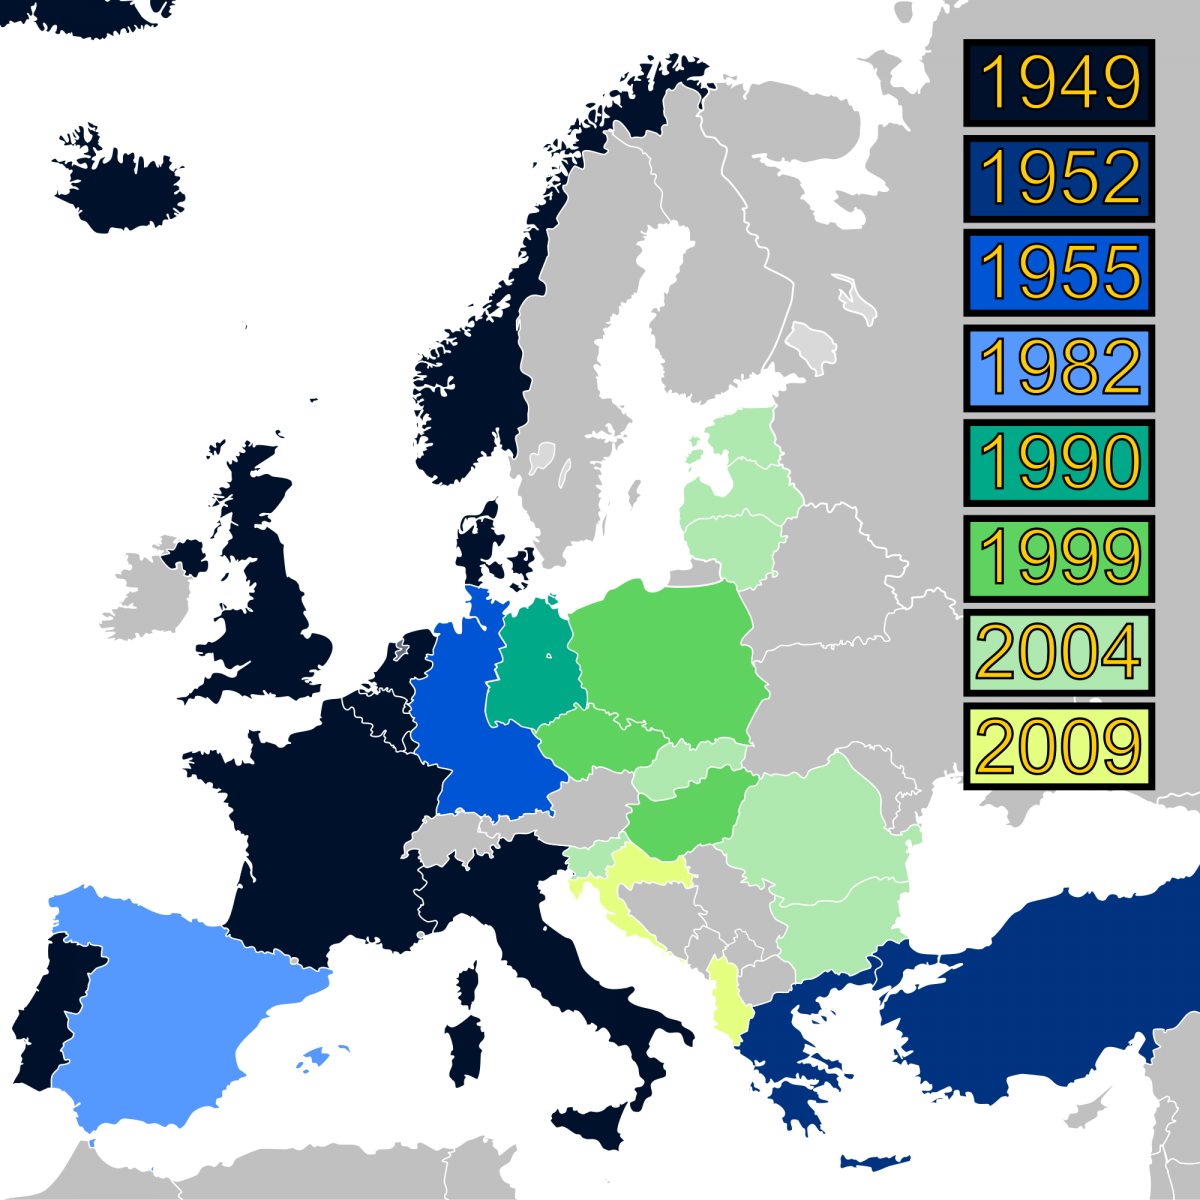 Enlargement of NATO, 1949-2009.